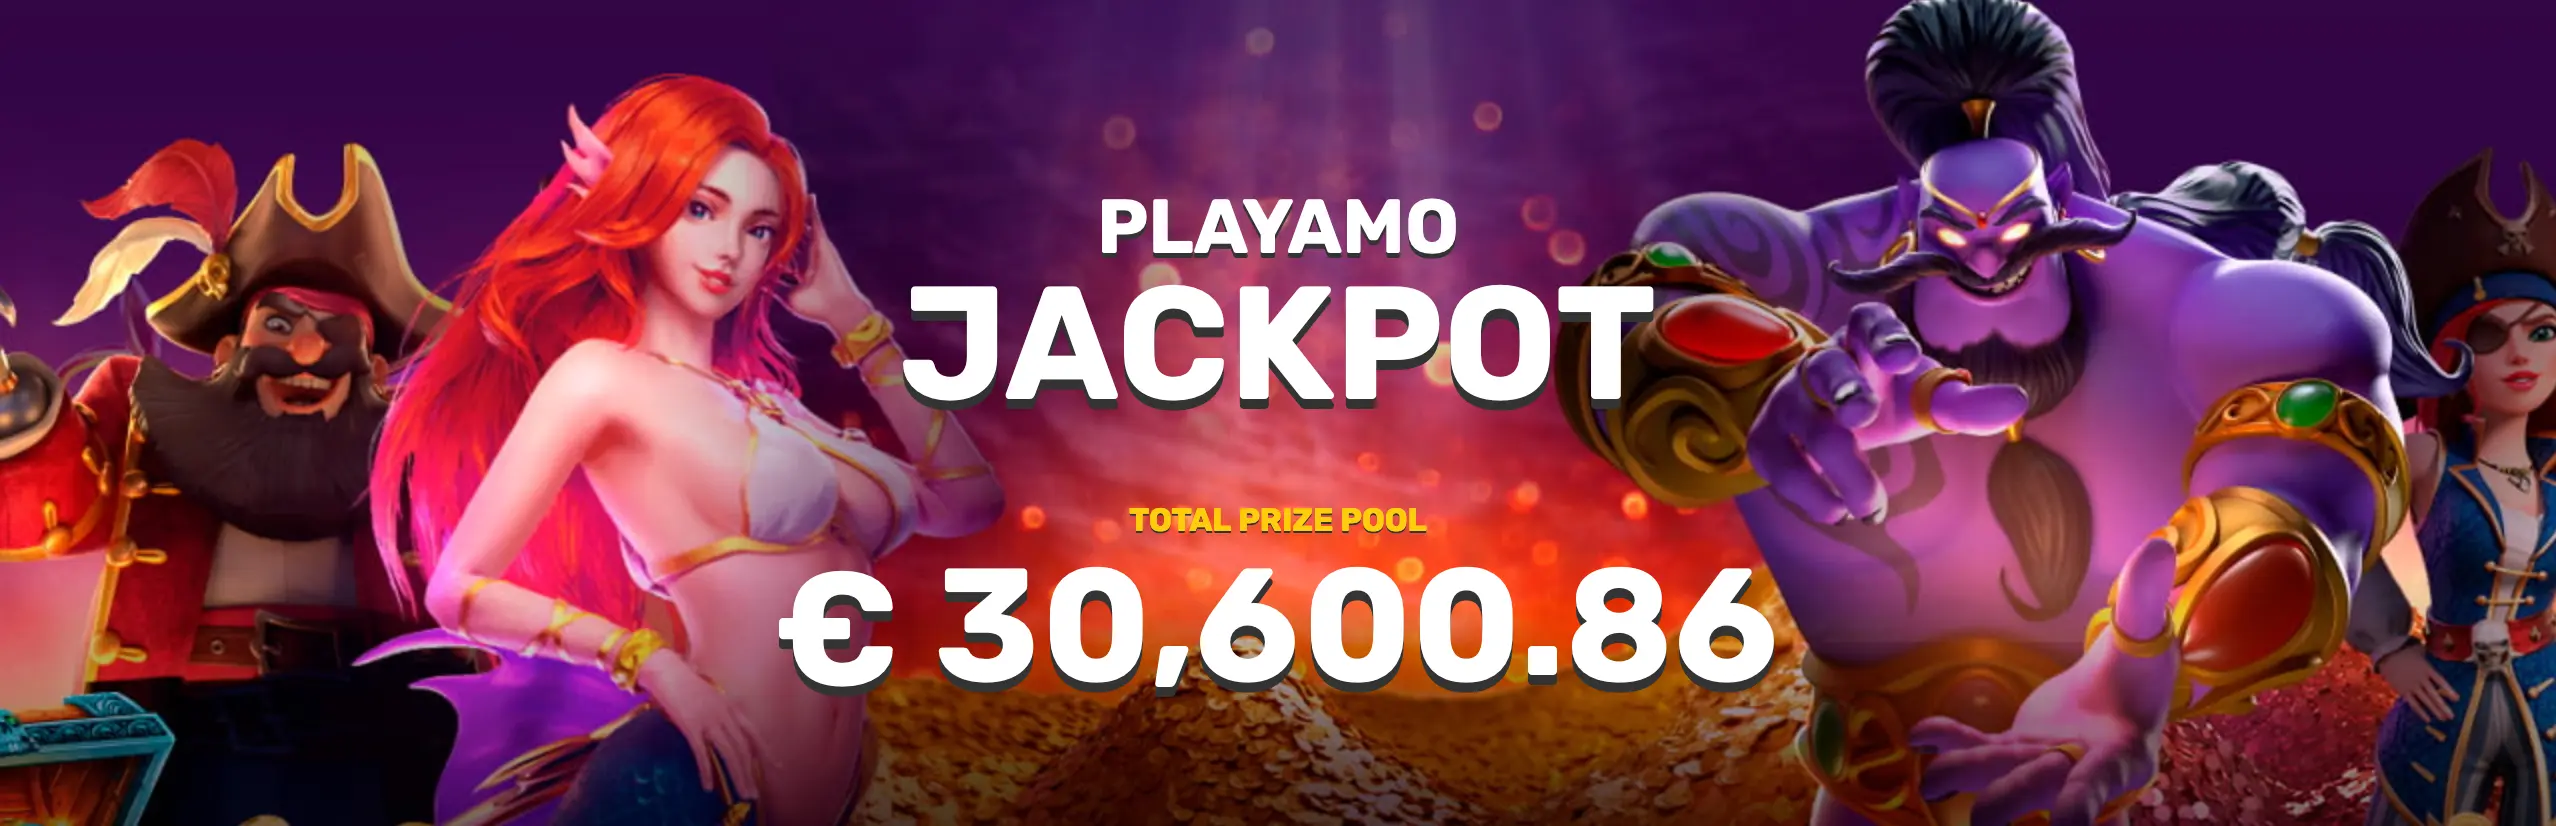 Playamo Casino Jackpot